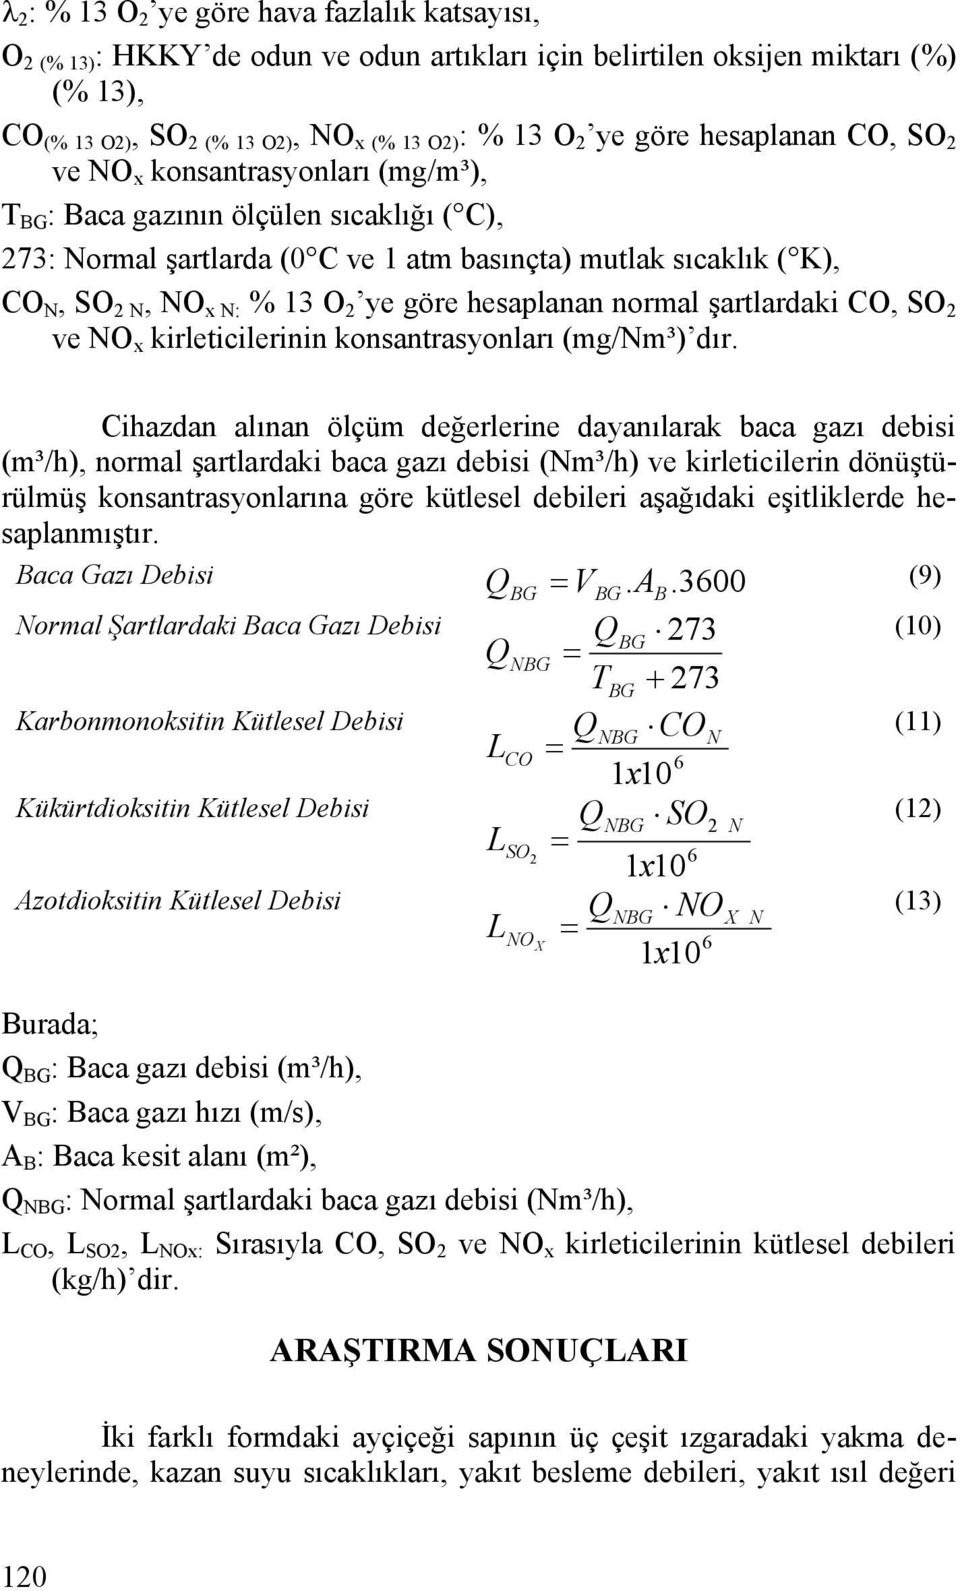 normal şartlardaki CO, SO ve NO x kirleticilerinin konsantrasyonları (mg/nm³) dır.